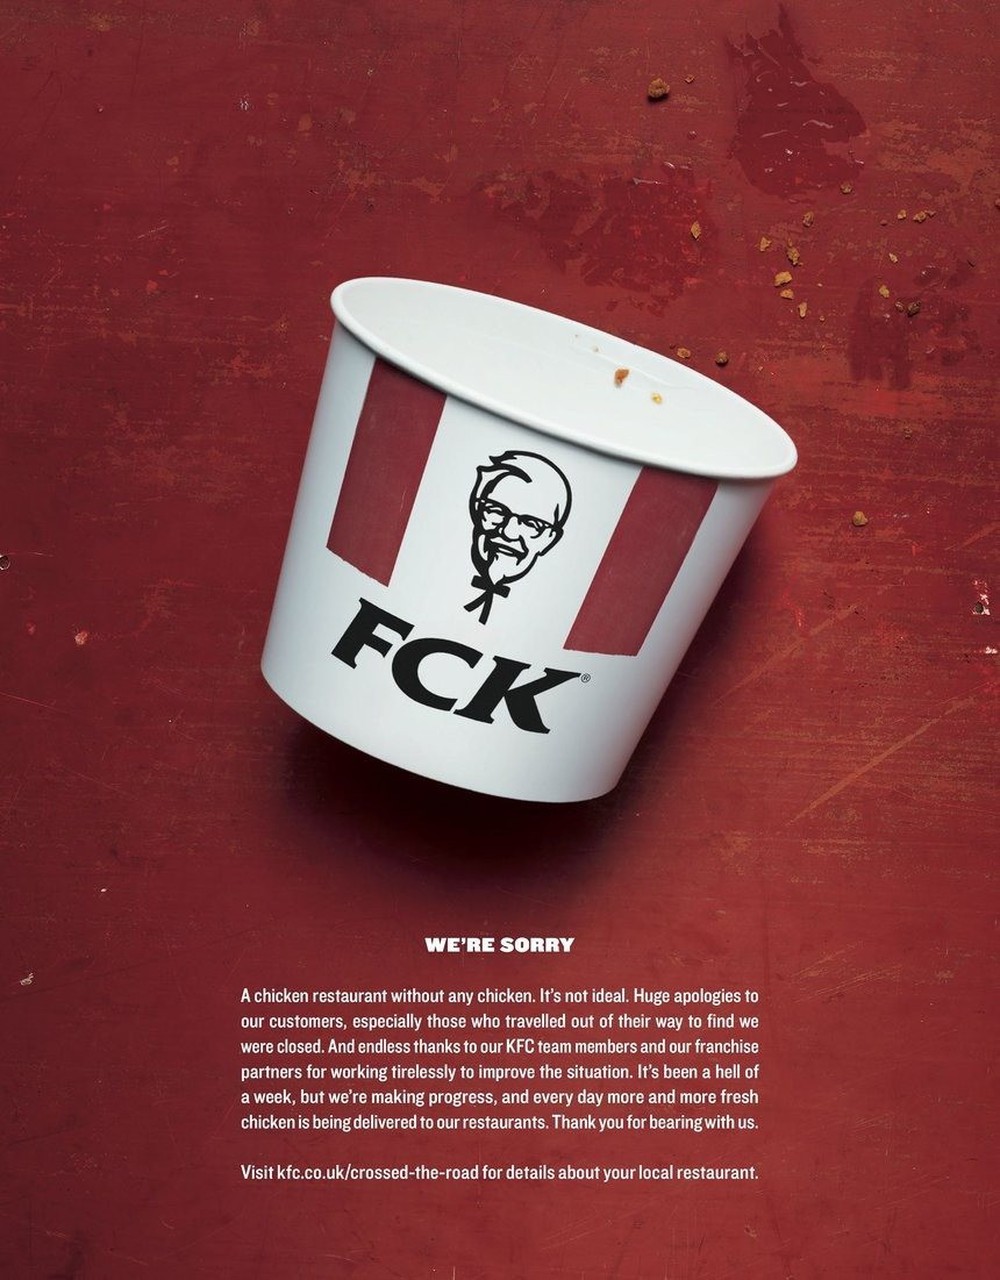  Quán gà không bán gà: Cuộc xử lý khủng hoảng đầy ngoạn mục của KFC khi tự biến tên thương hiệu thành niềm vui cho khách hàng - Ảnh 3.